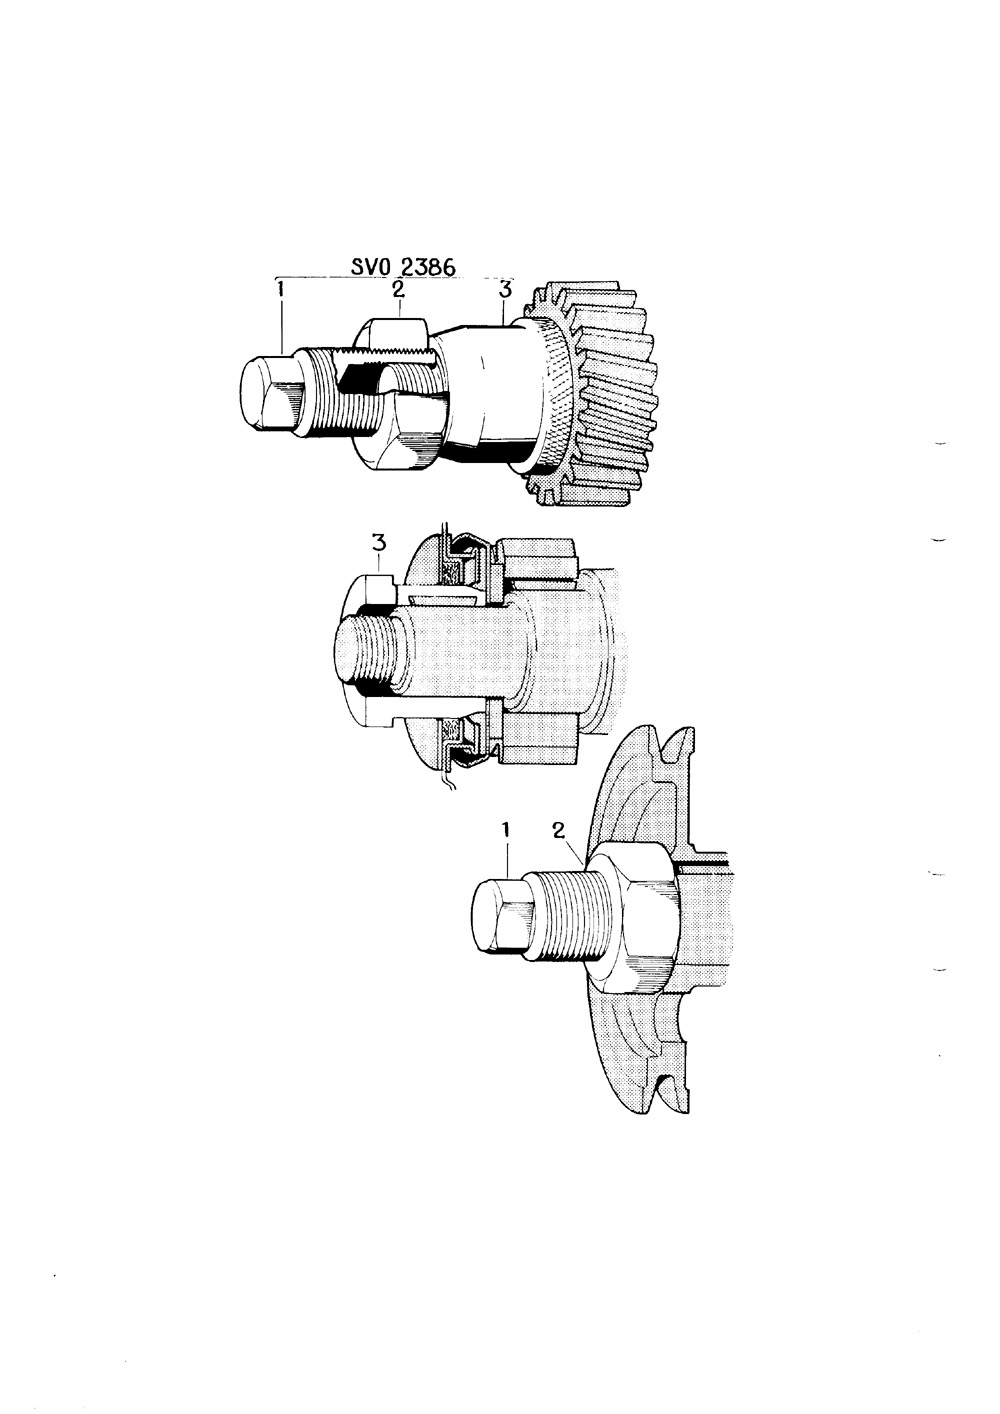 1050-205-V5 1960 Januari verktyg vevaxeldrev,kamaxelhjul,transmissionskapa, remskiva